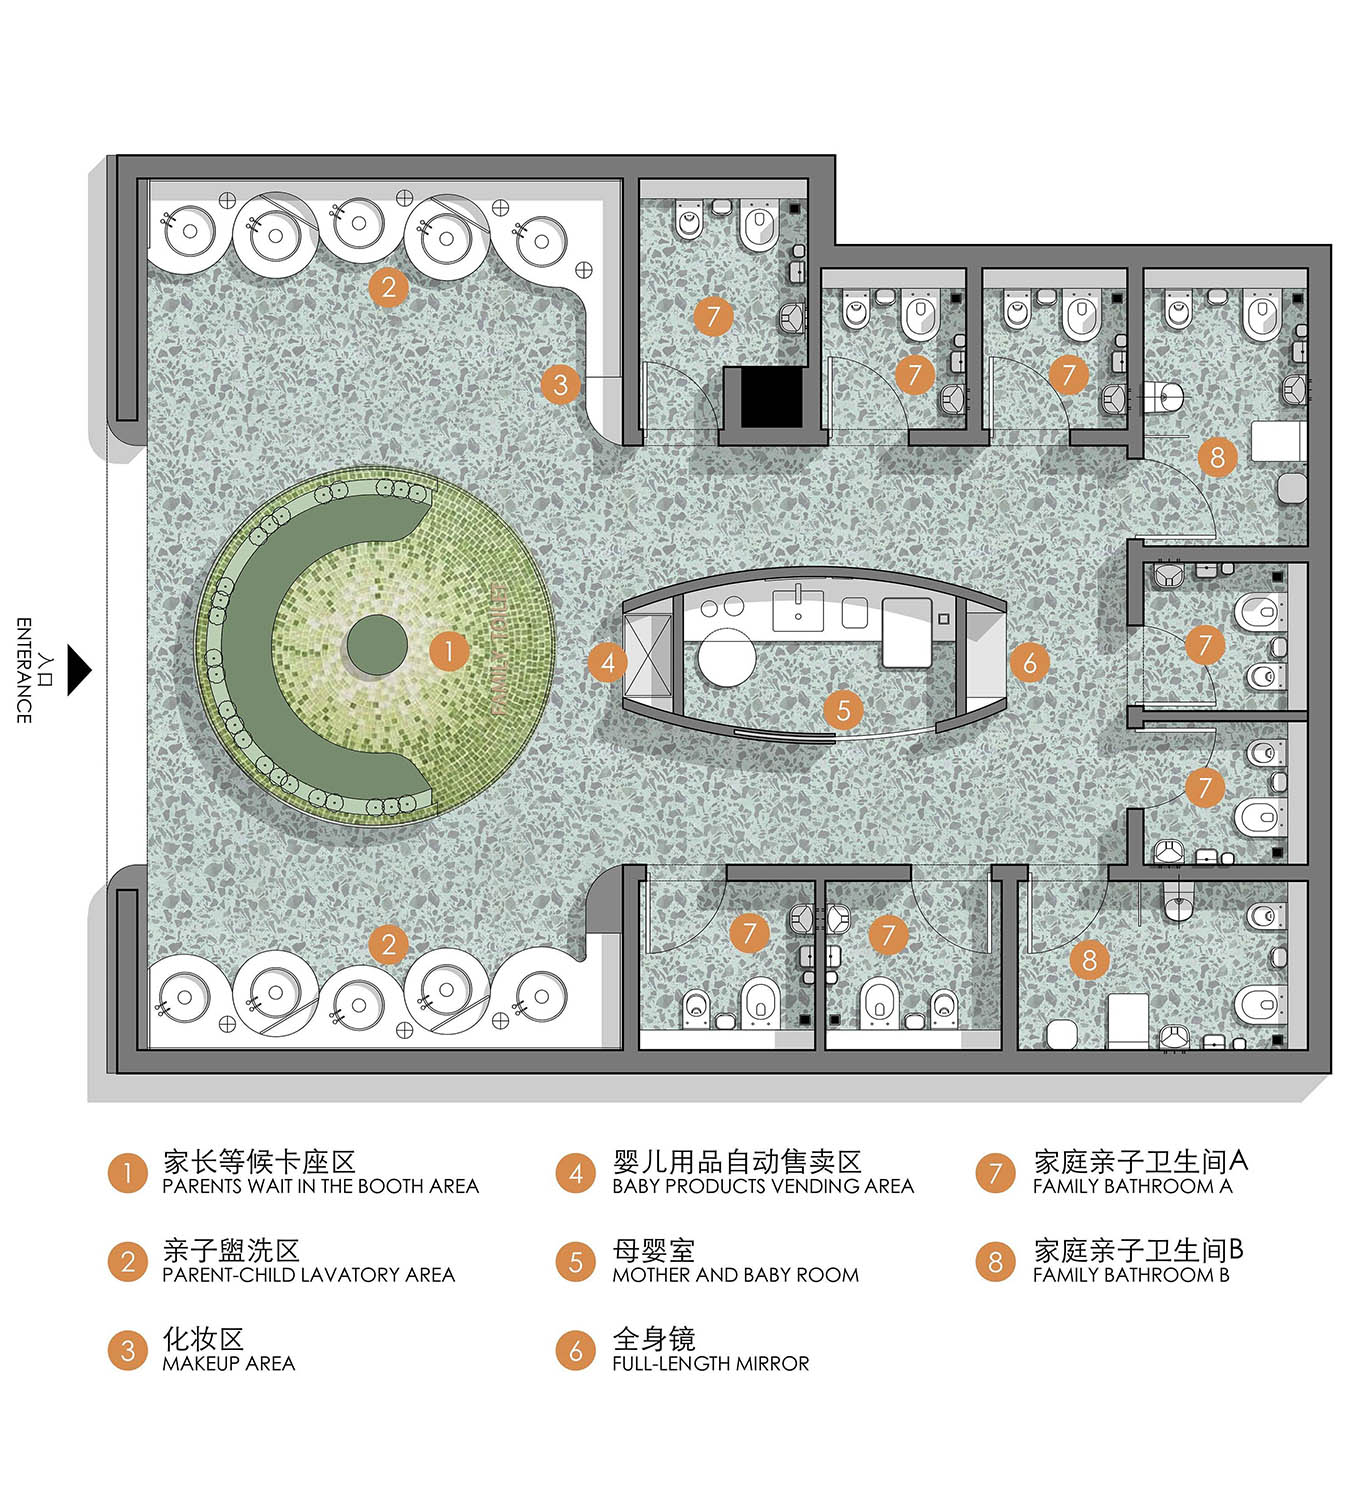 公共空間設計,衛生間設計,商場衛生間設計,商場衛生間裝修,公共廁所設計,公共衛生間設計,上海,壁上叢林交叉性別衛生間,佑向設計